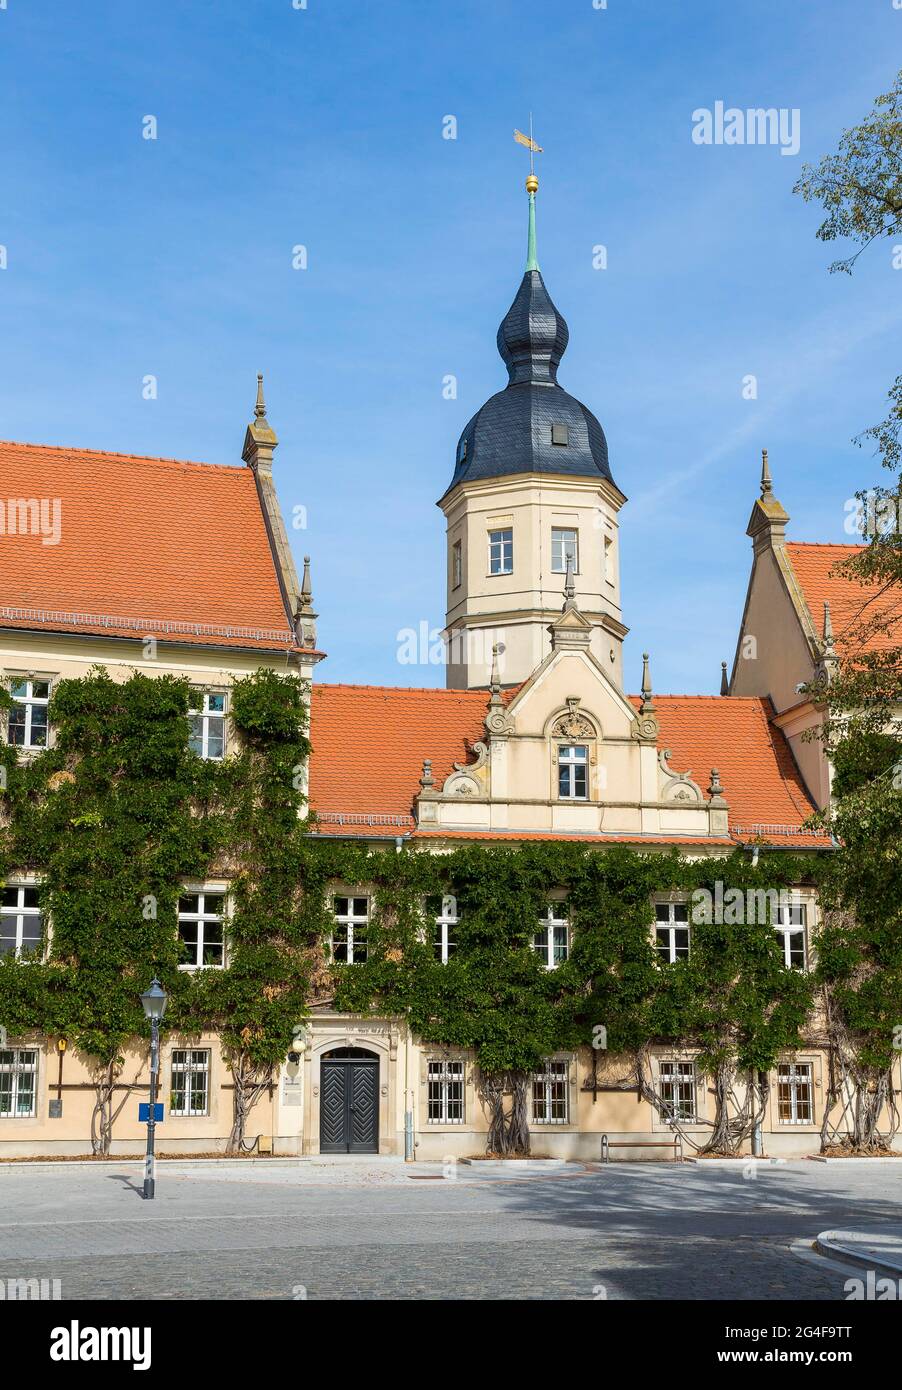 Hôtel de ville avec tour de l'hôtel de ville, Riesa, Saxe, Allemagne Banque D'Images